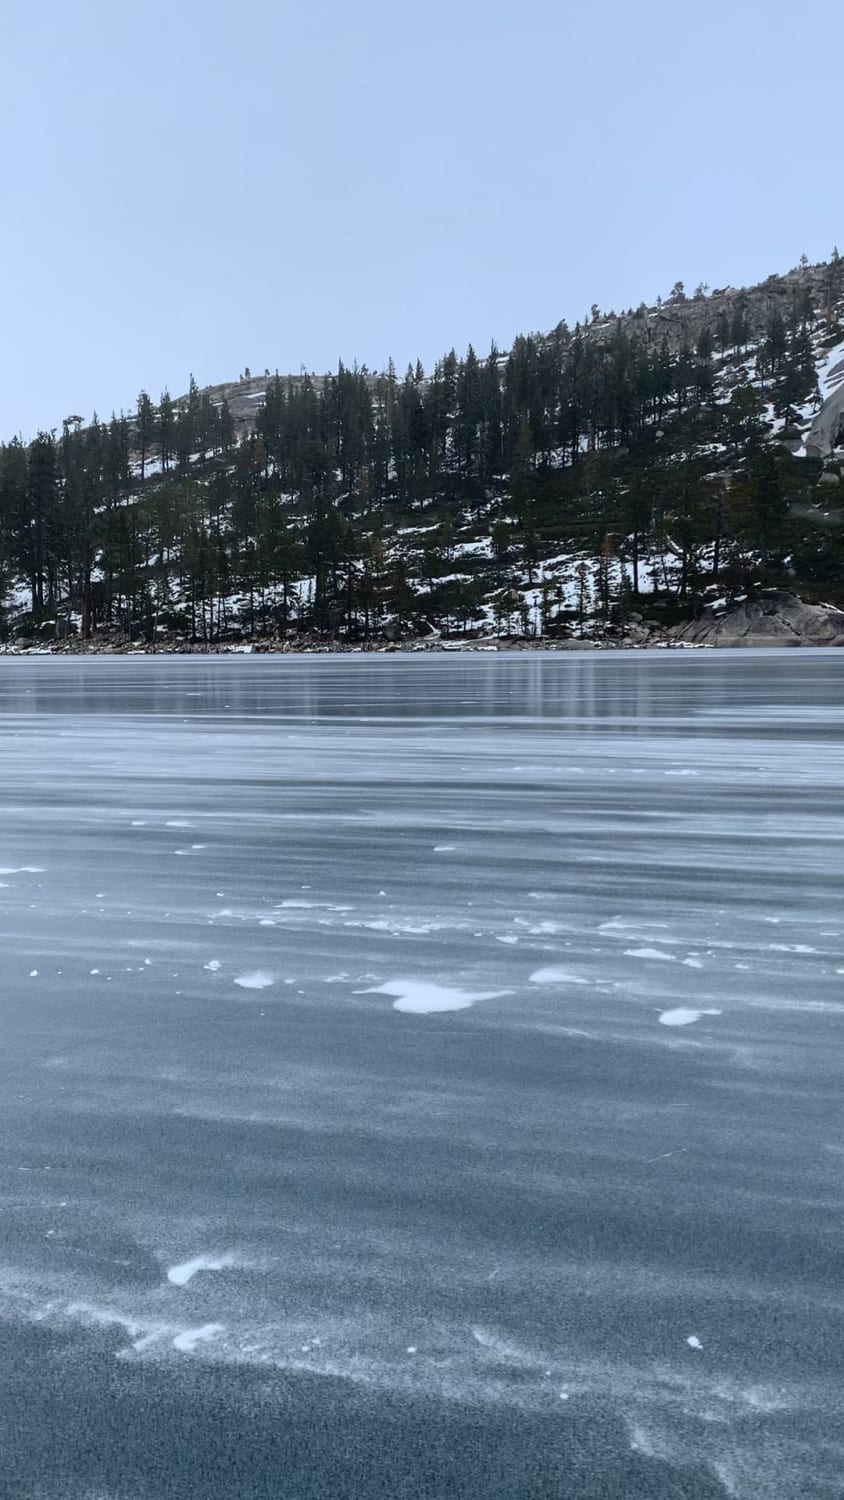 Snow blowing across a frozen lake in Tahoe